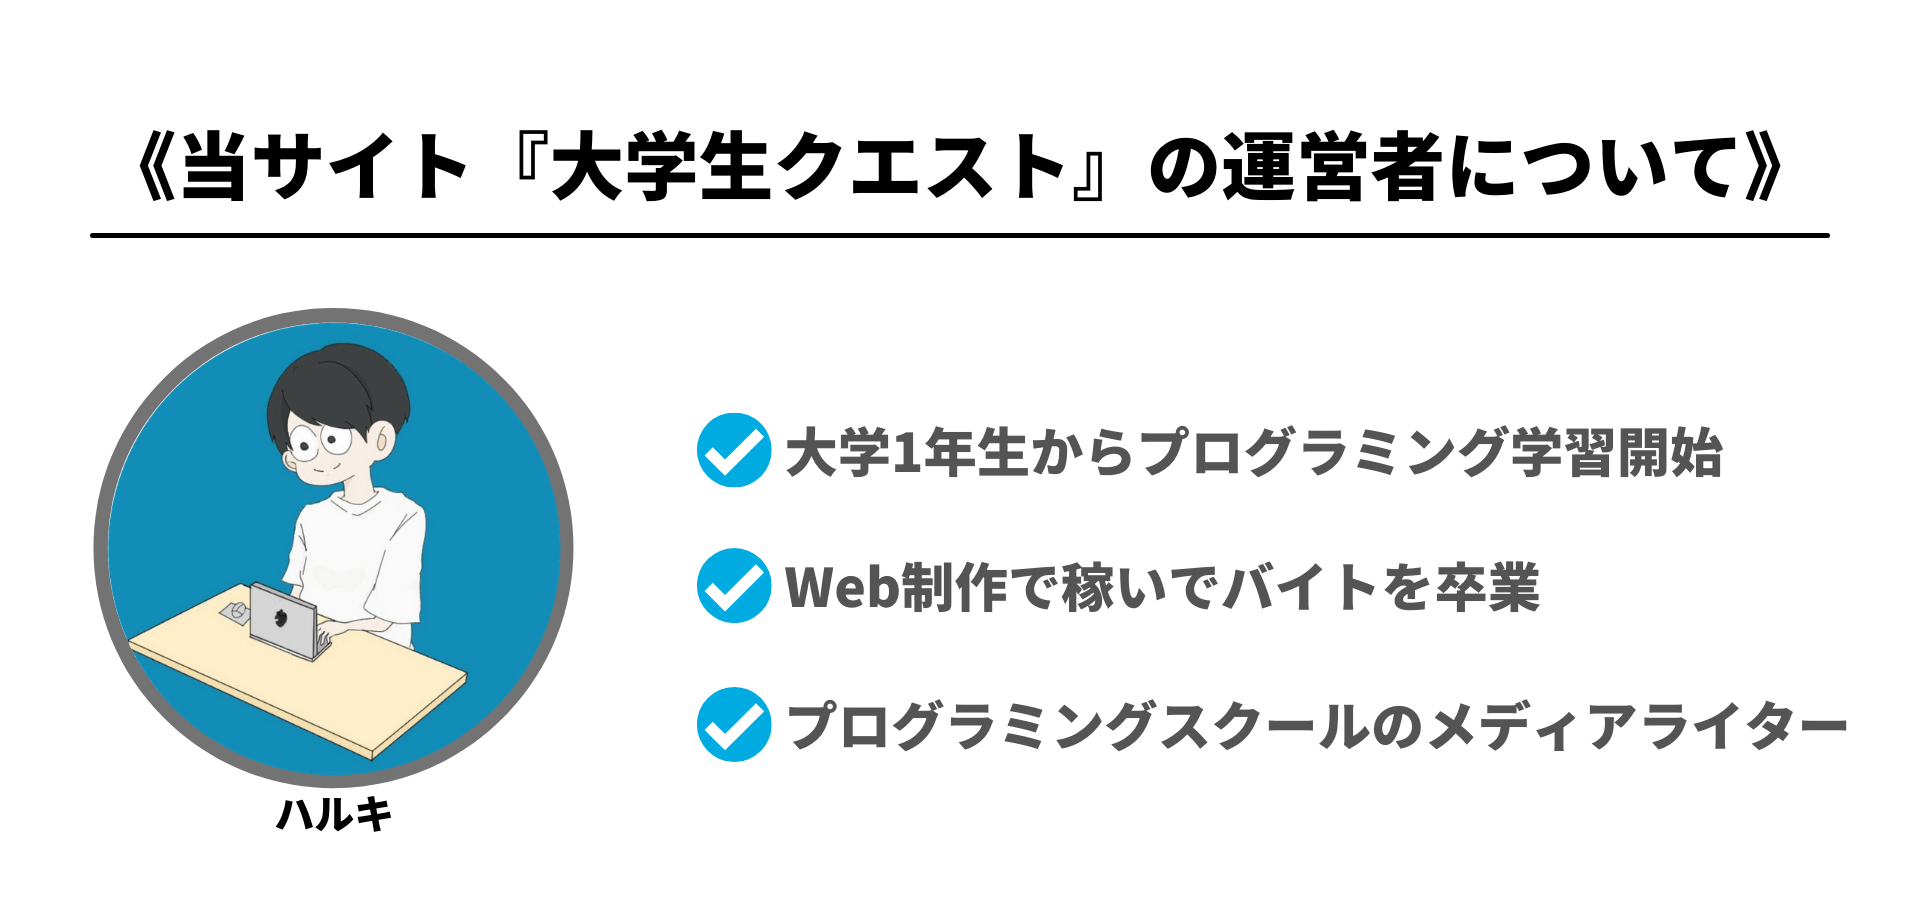 MM WEBCAMP Webアプリ開発コースについて解説しているharukiblogの運営者について